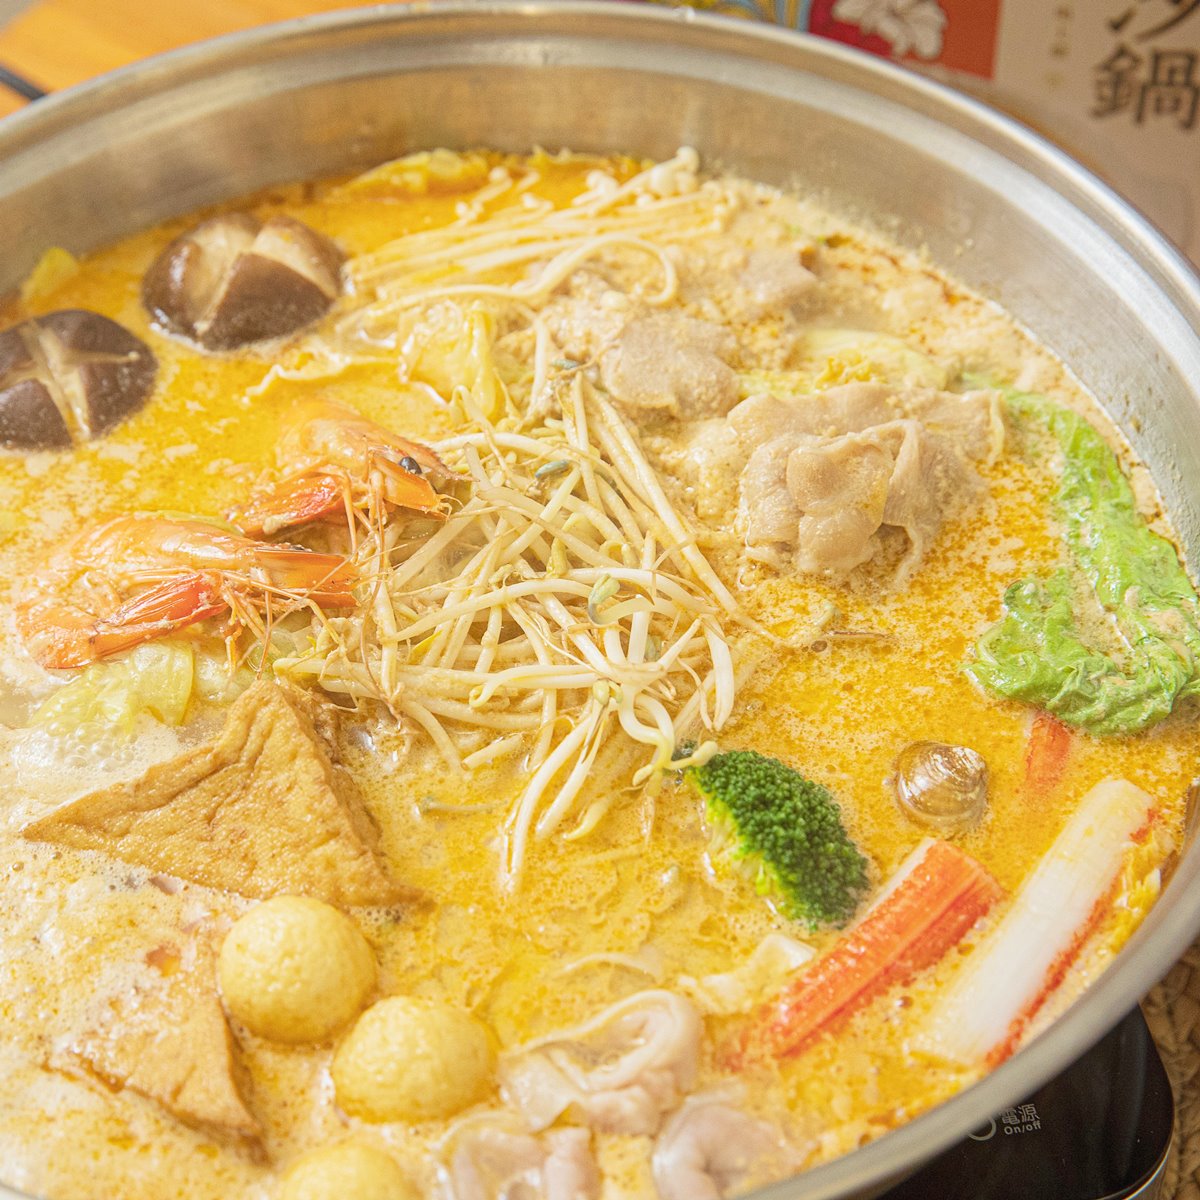 特色鍋物在家輕鬆吃！桂冠推出4款「異國火鍋湯底」，叻沙鍋、韓式部隊鍋必吃